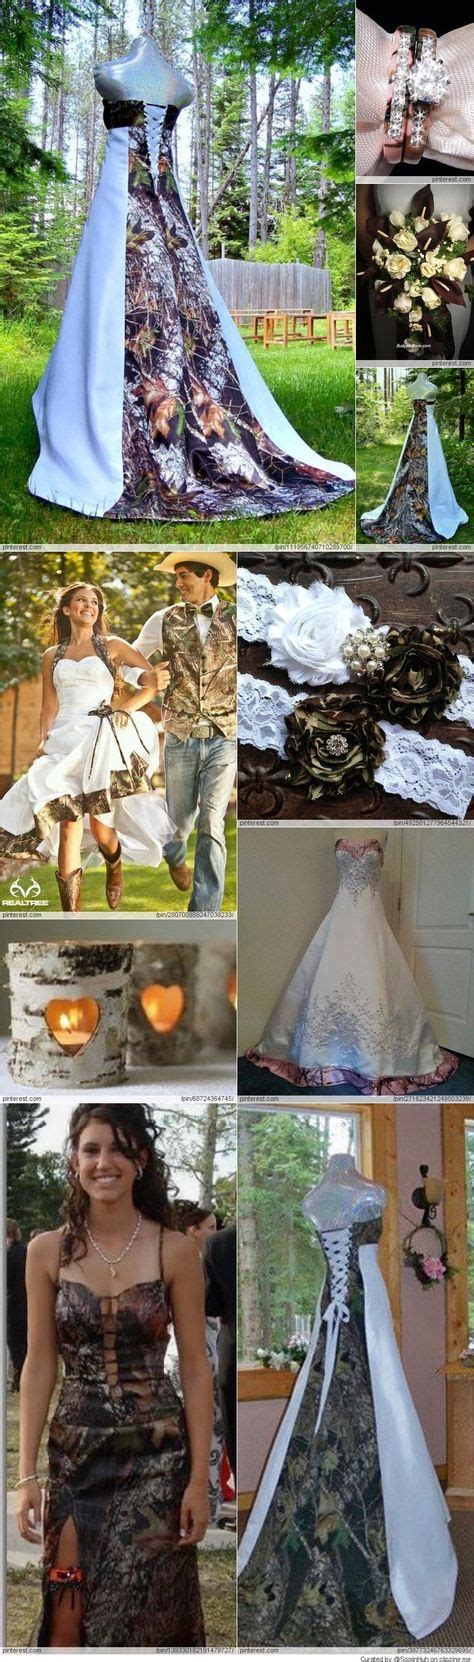 14 Best Camouflage Wedding Dresses Images Camouflage Wedding